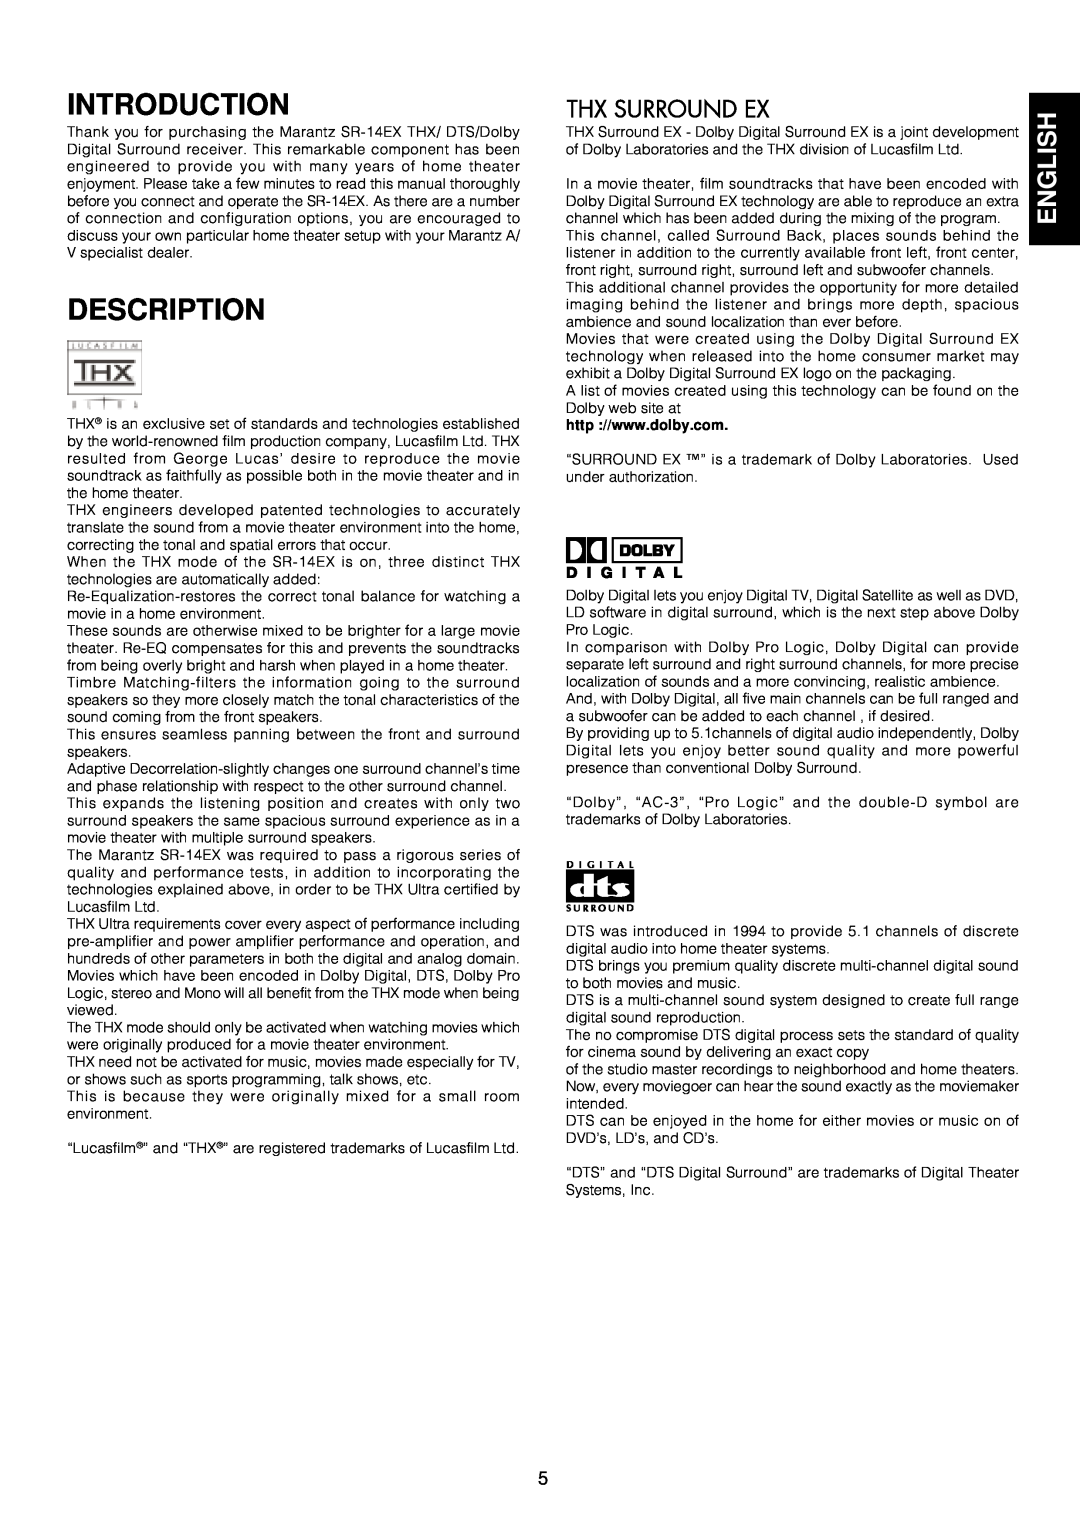 Marantz SR-14EX manual Introduction, Description, English 